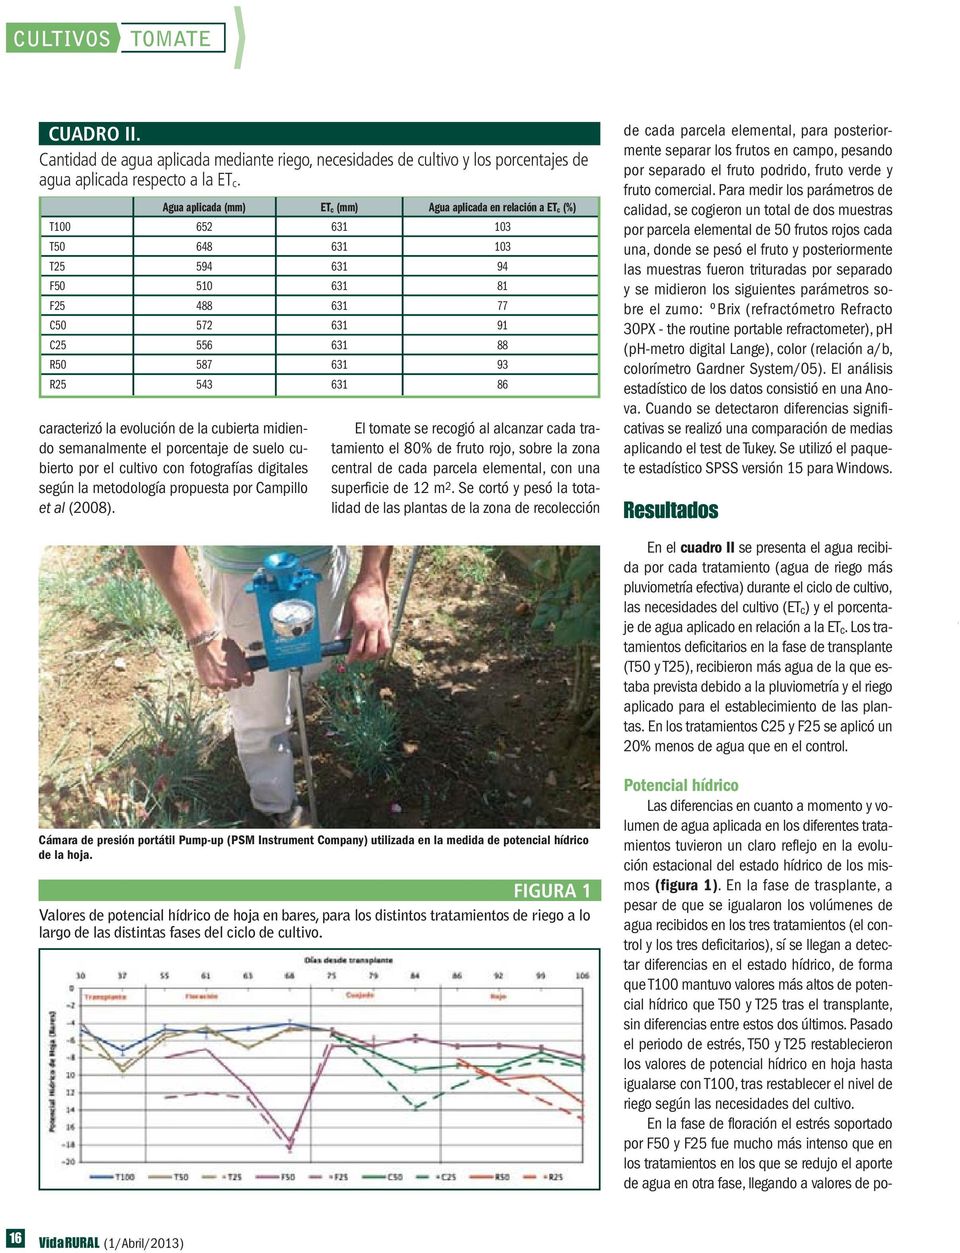 631 86 caracterizó la evolución de la cubierta midiendo semanalmente el porcentaje de suelo cubierto por el cultivo con fotografías digitales según la metodología propuesta por Campillo et al (2008).